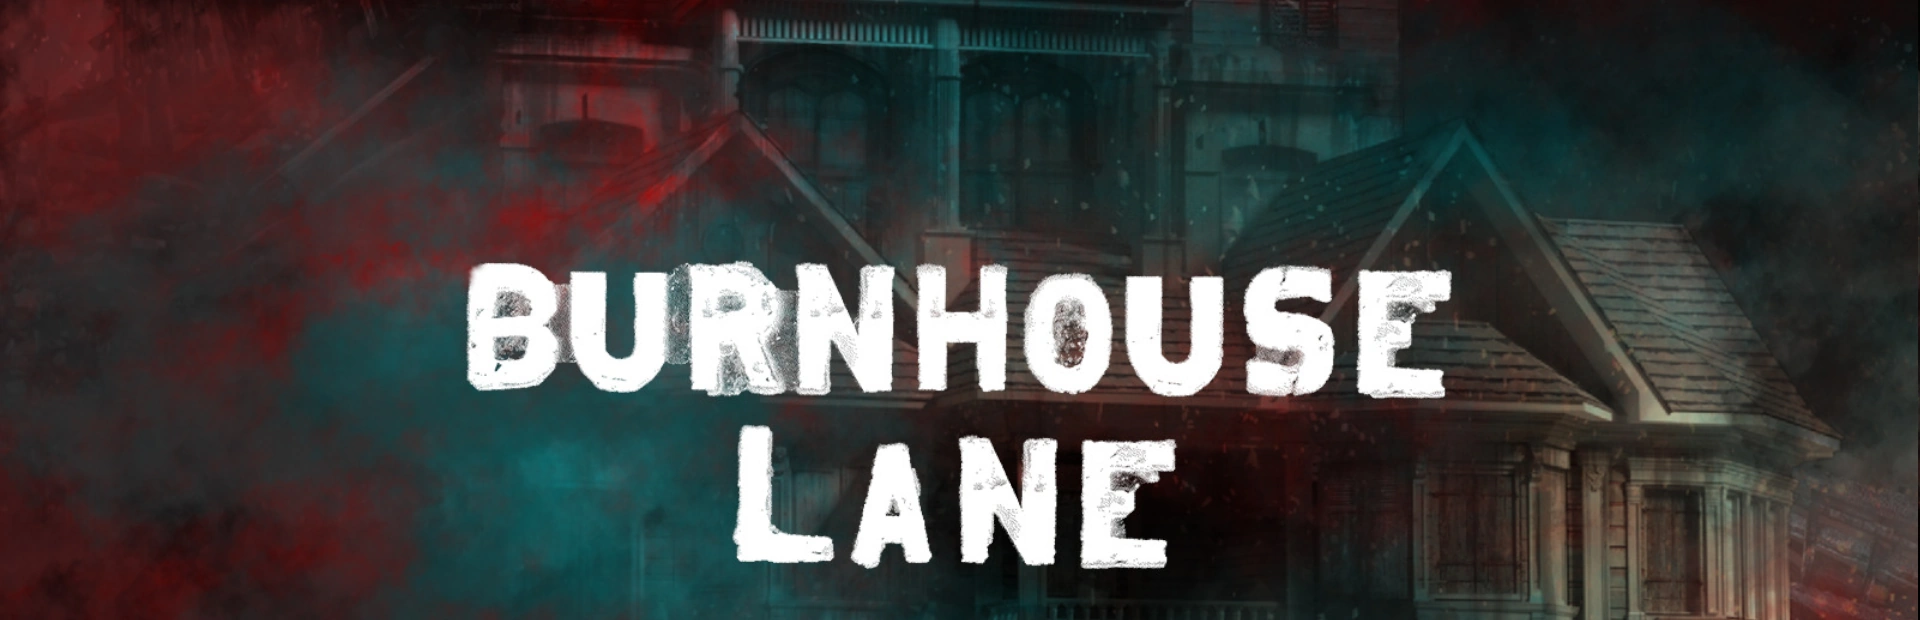 دانلود بازی Burnhouse Lane برای کامپیوتر | گیمباتو